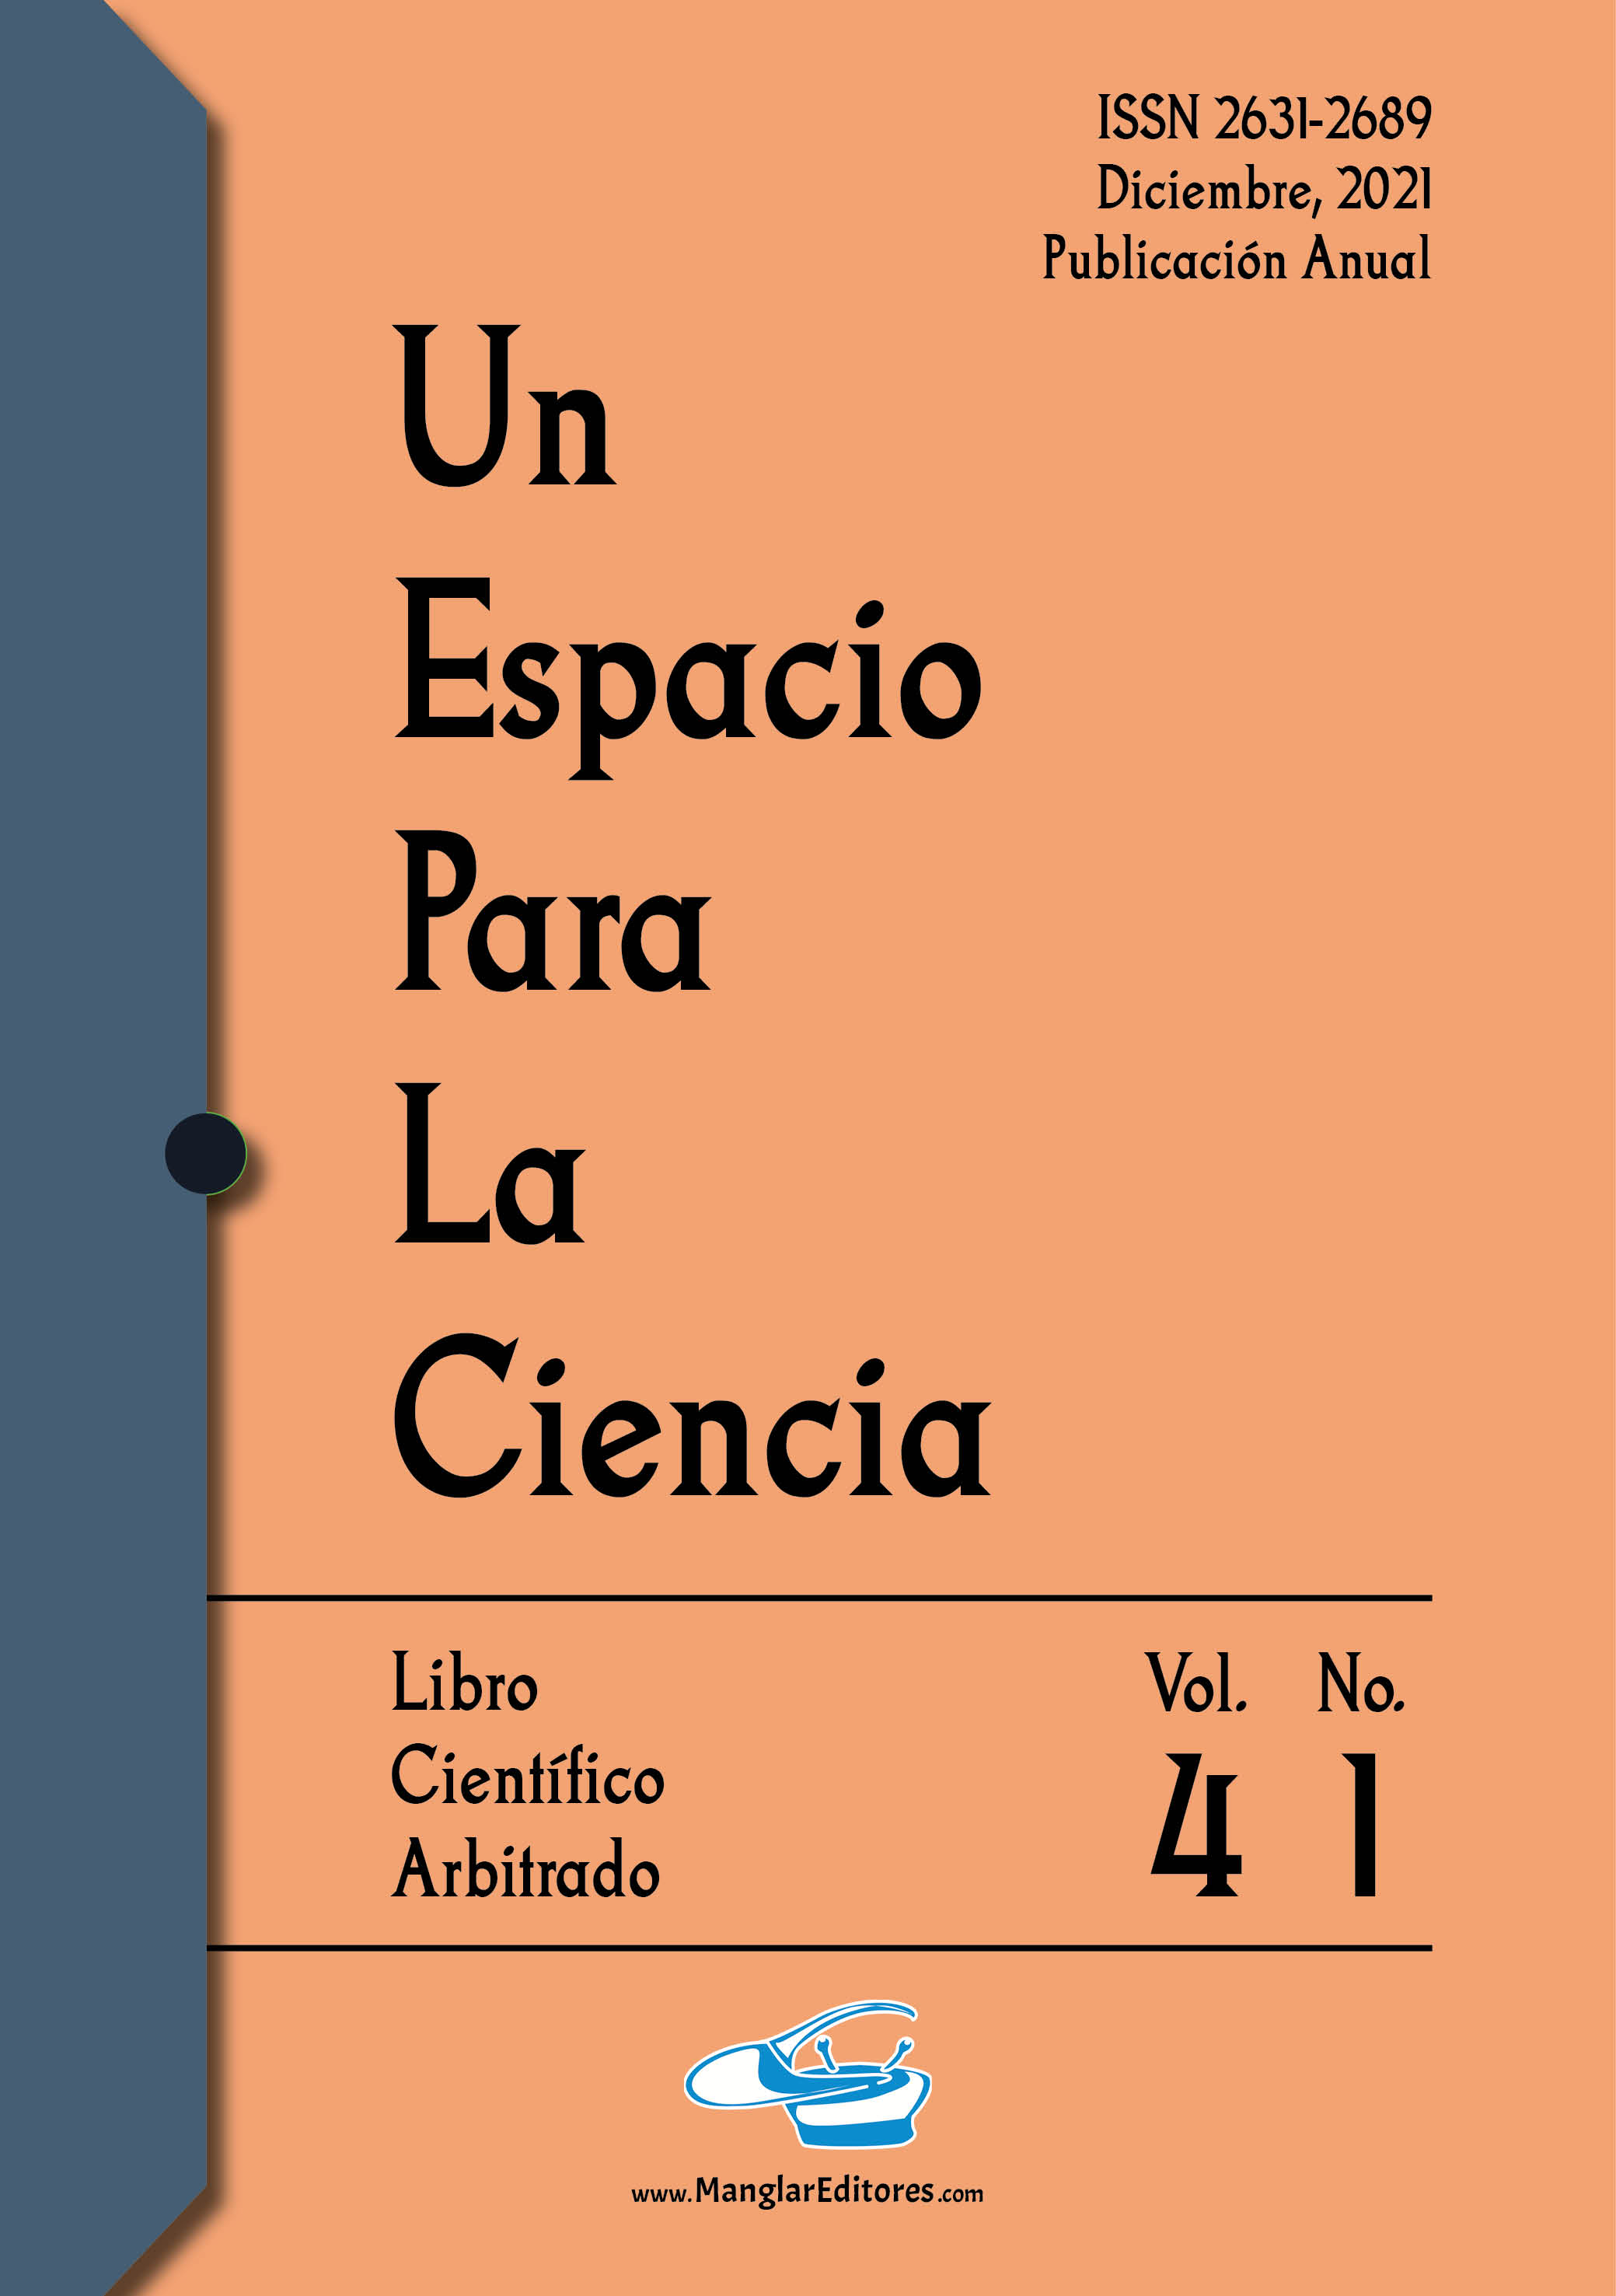 Imagen muestra la portada del libro.